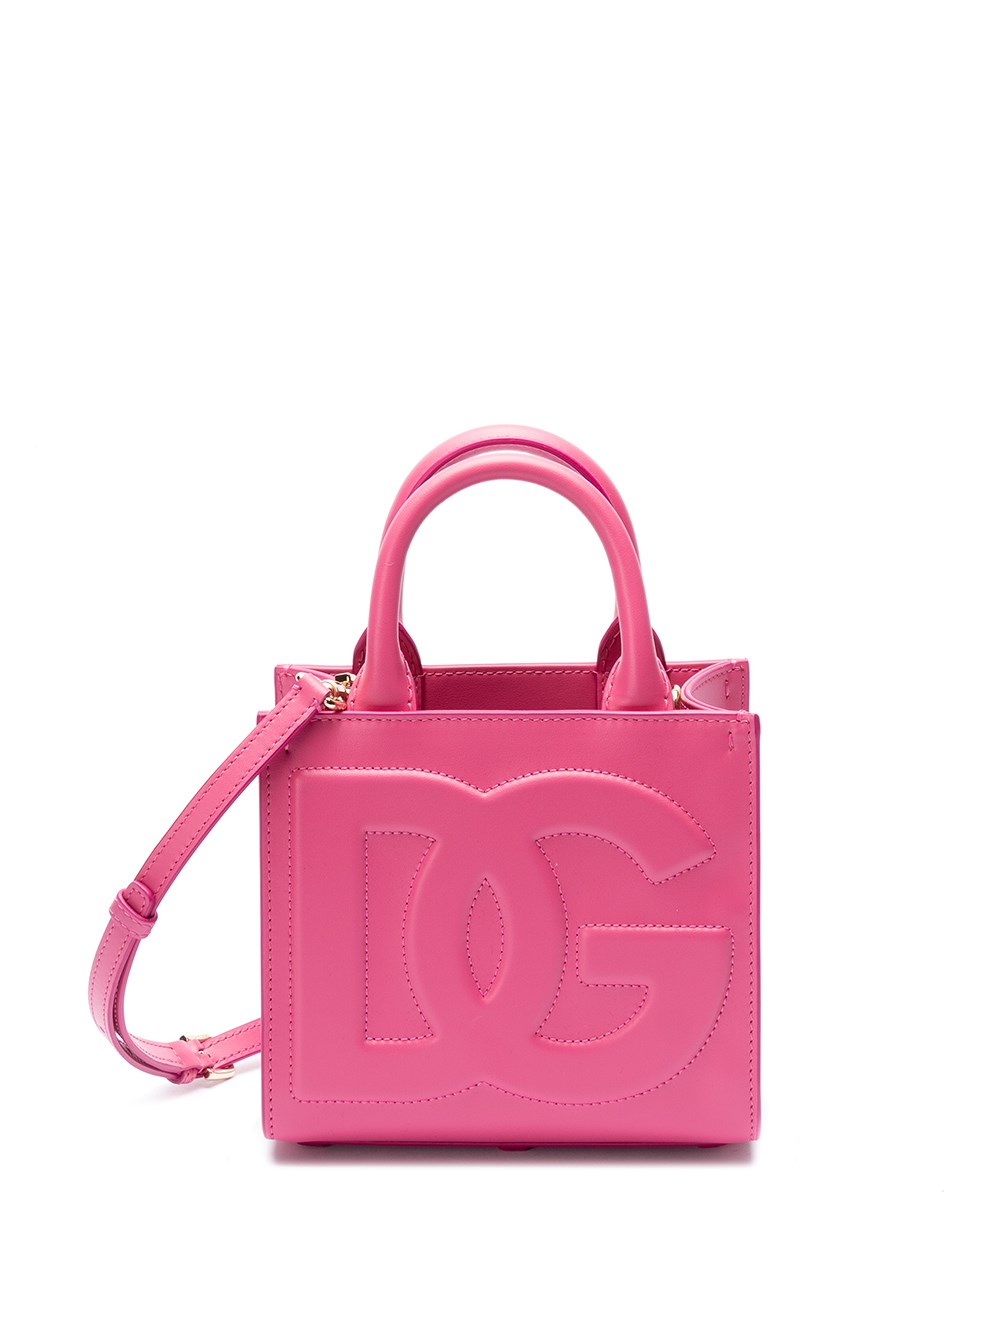 Dolce & Gabbana Shopping Bag In Pink